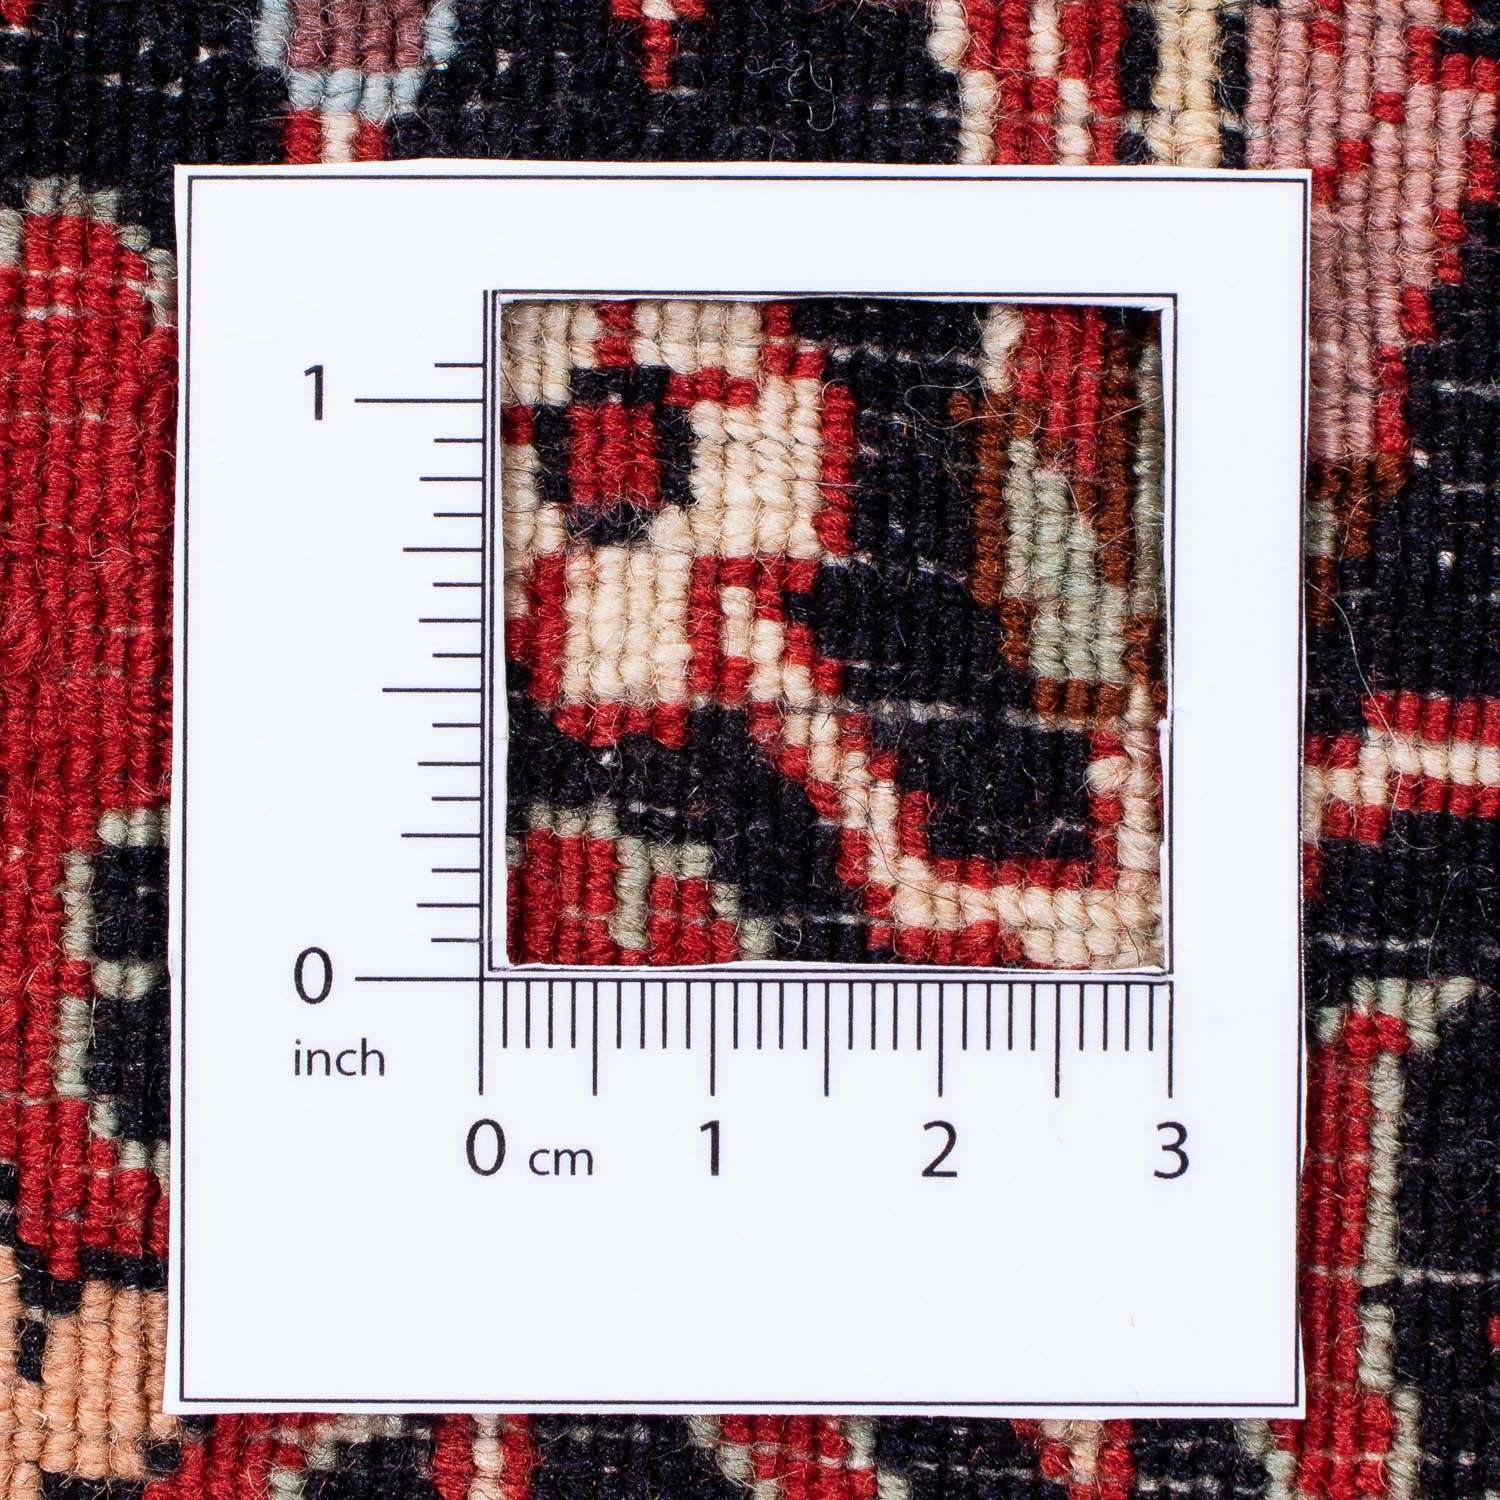 Persisk matta - Bijar kvadrat  - 250 x 250 cm - mörkröd